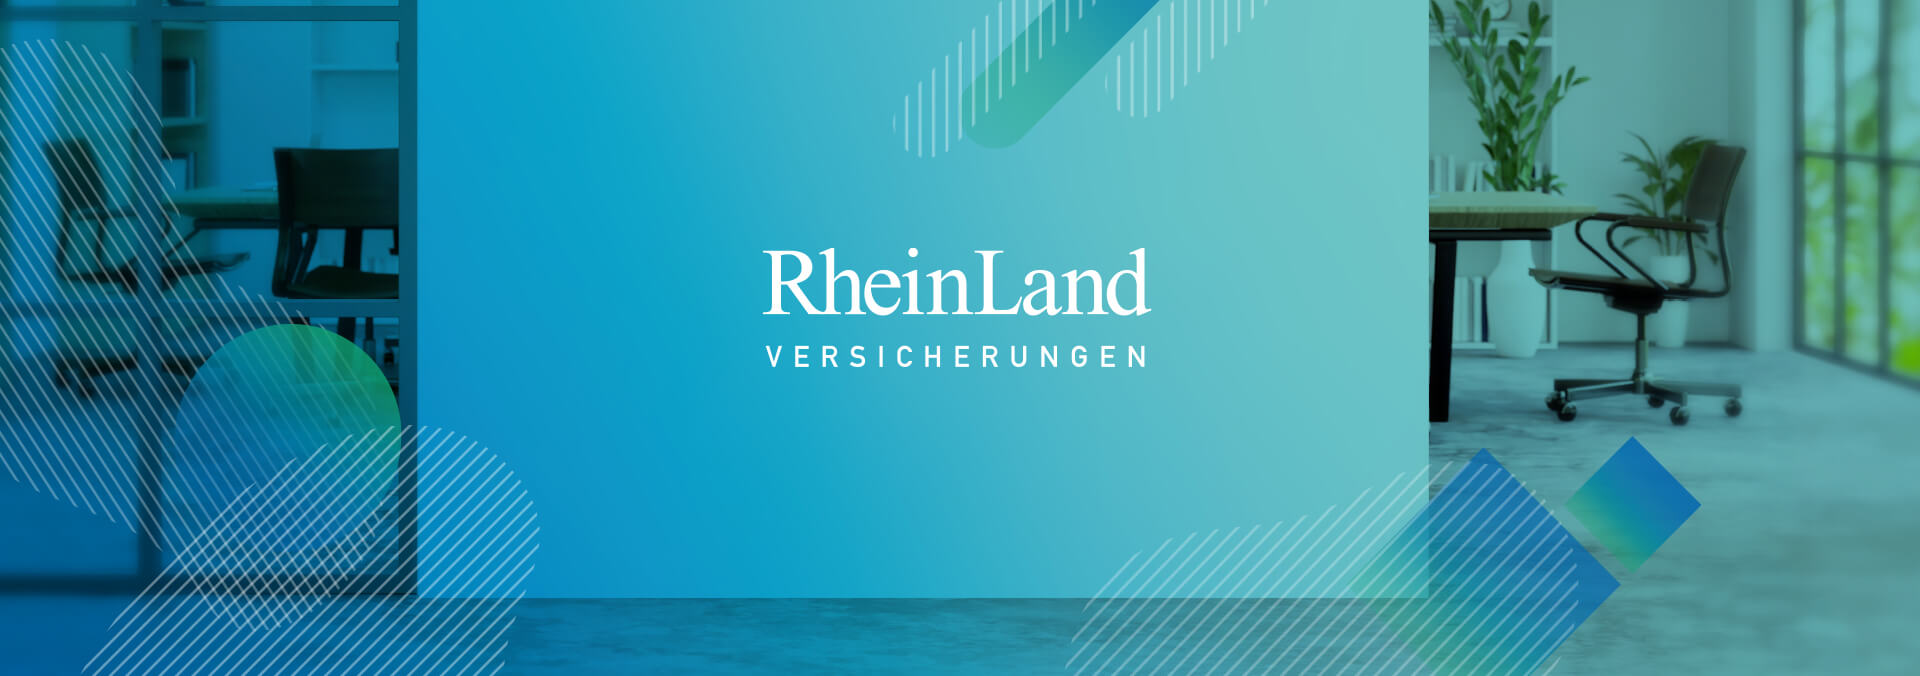 RheinLand Versicherungen Headerbild Büroräume mit grafischen Overlays zum Case Recruiting Campagne